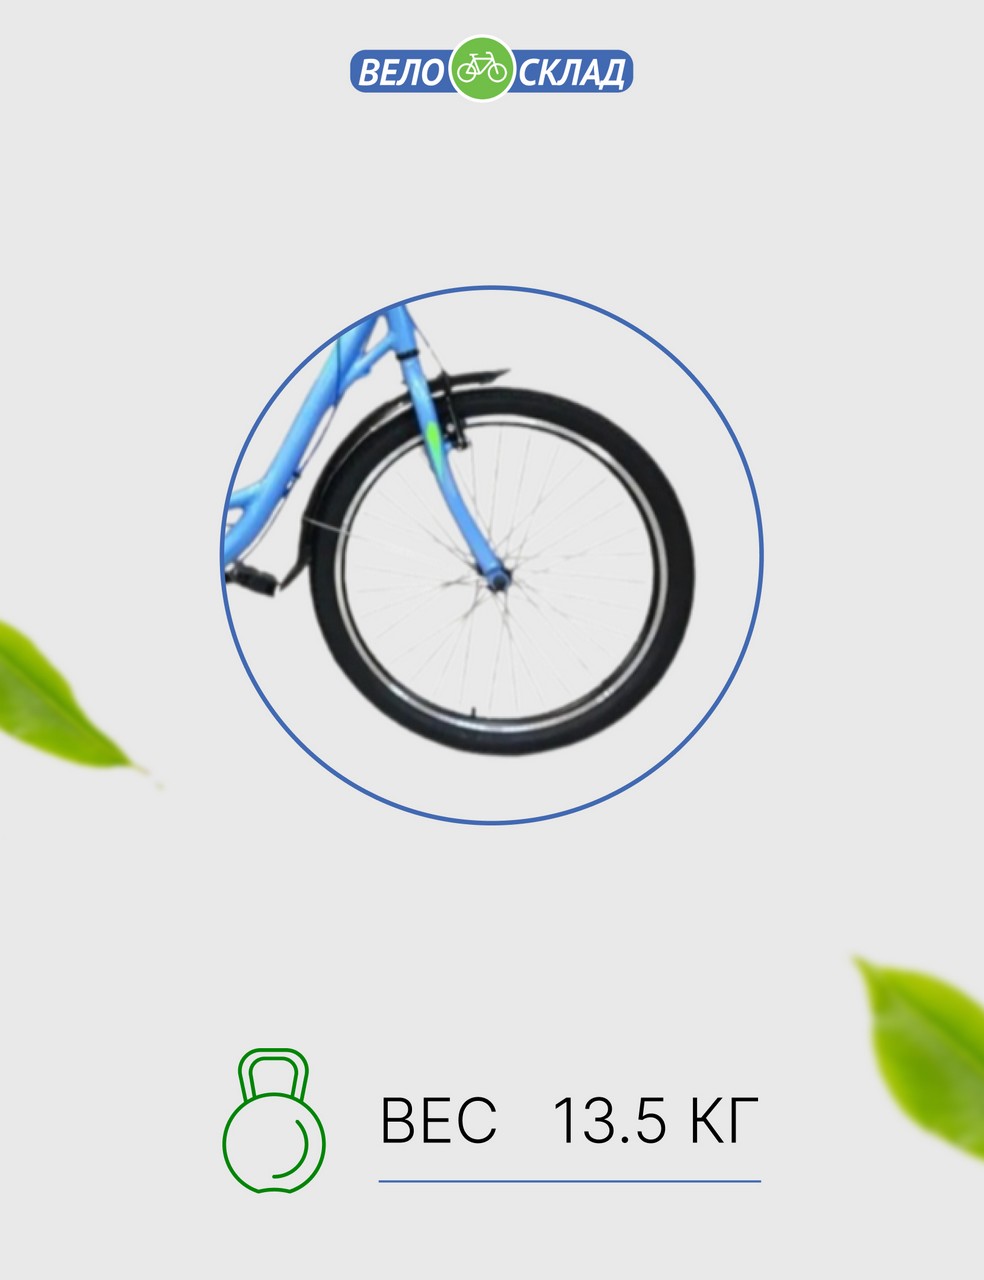 Подростковый велосипед Stels Miss 4300 V 24 V010, год 2022, цвет Синий, ростовка 14